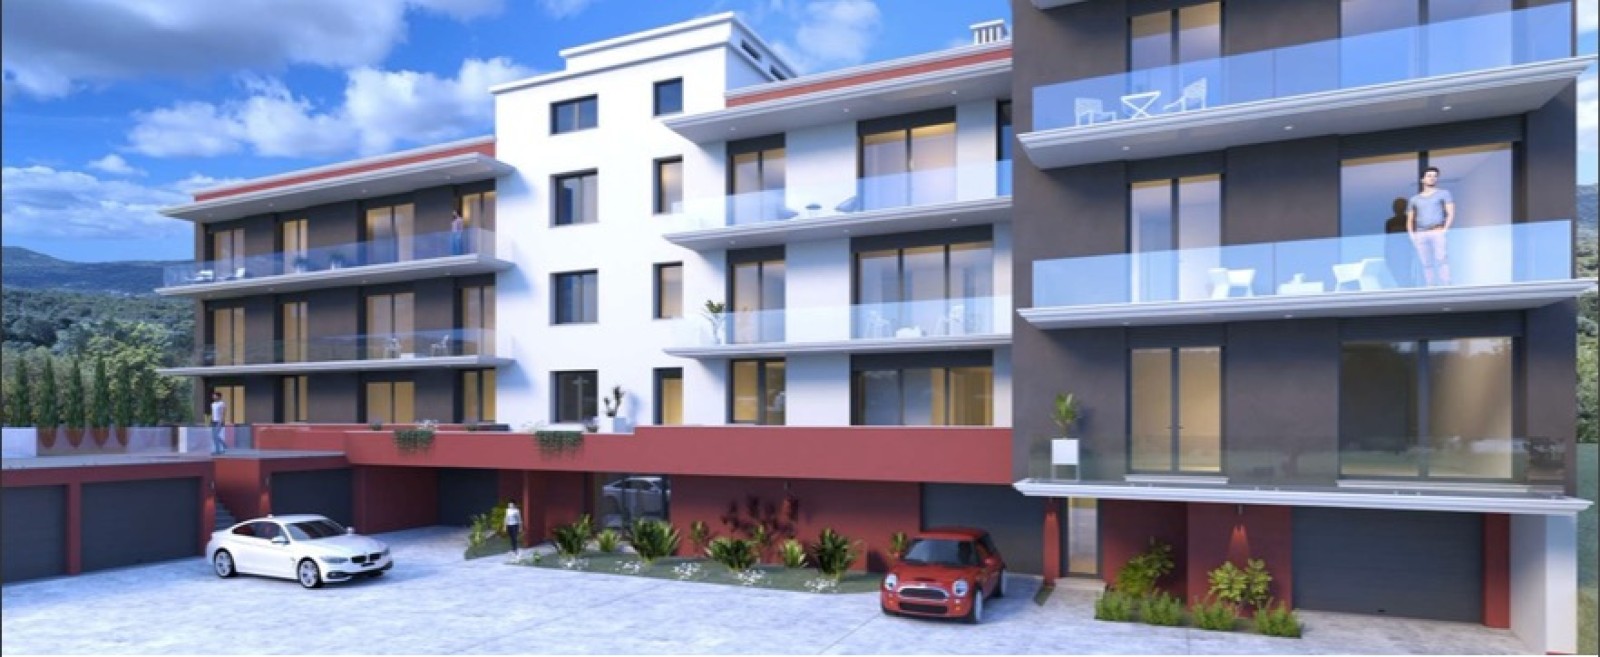 Apartamento duplex T4, para venda em São brás de Alportel, Algarve_225246